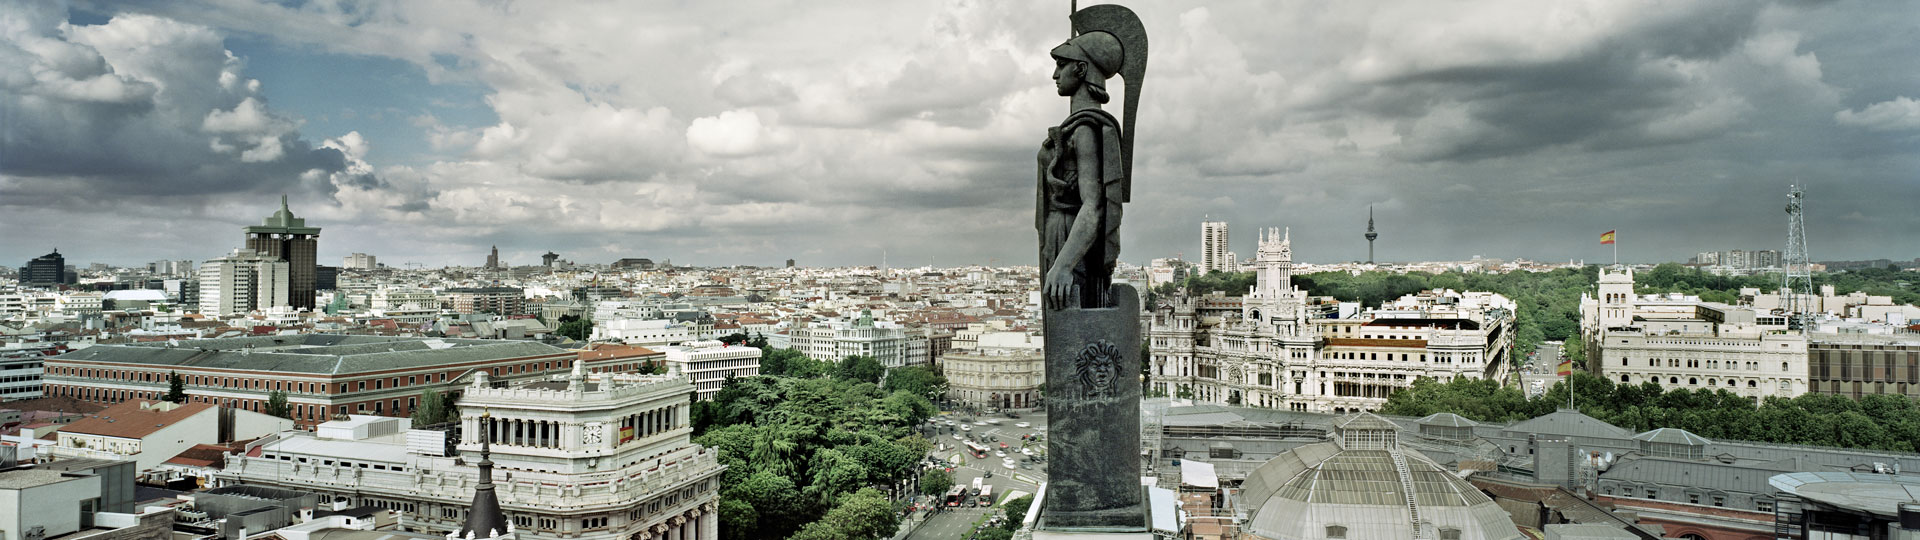 Blick auf Madrid von der Dachterrasse des Kreises der Schönen Künste